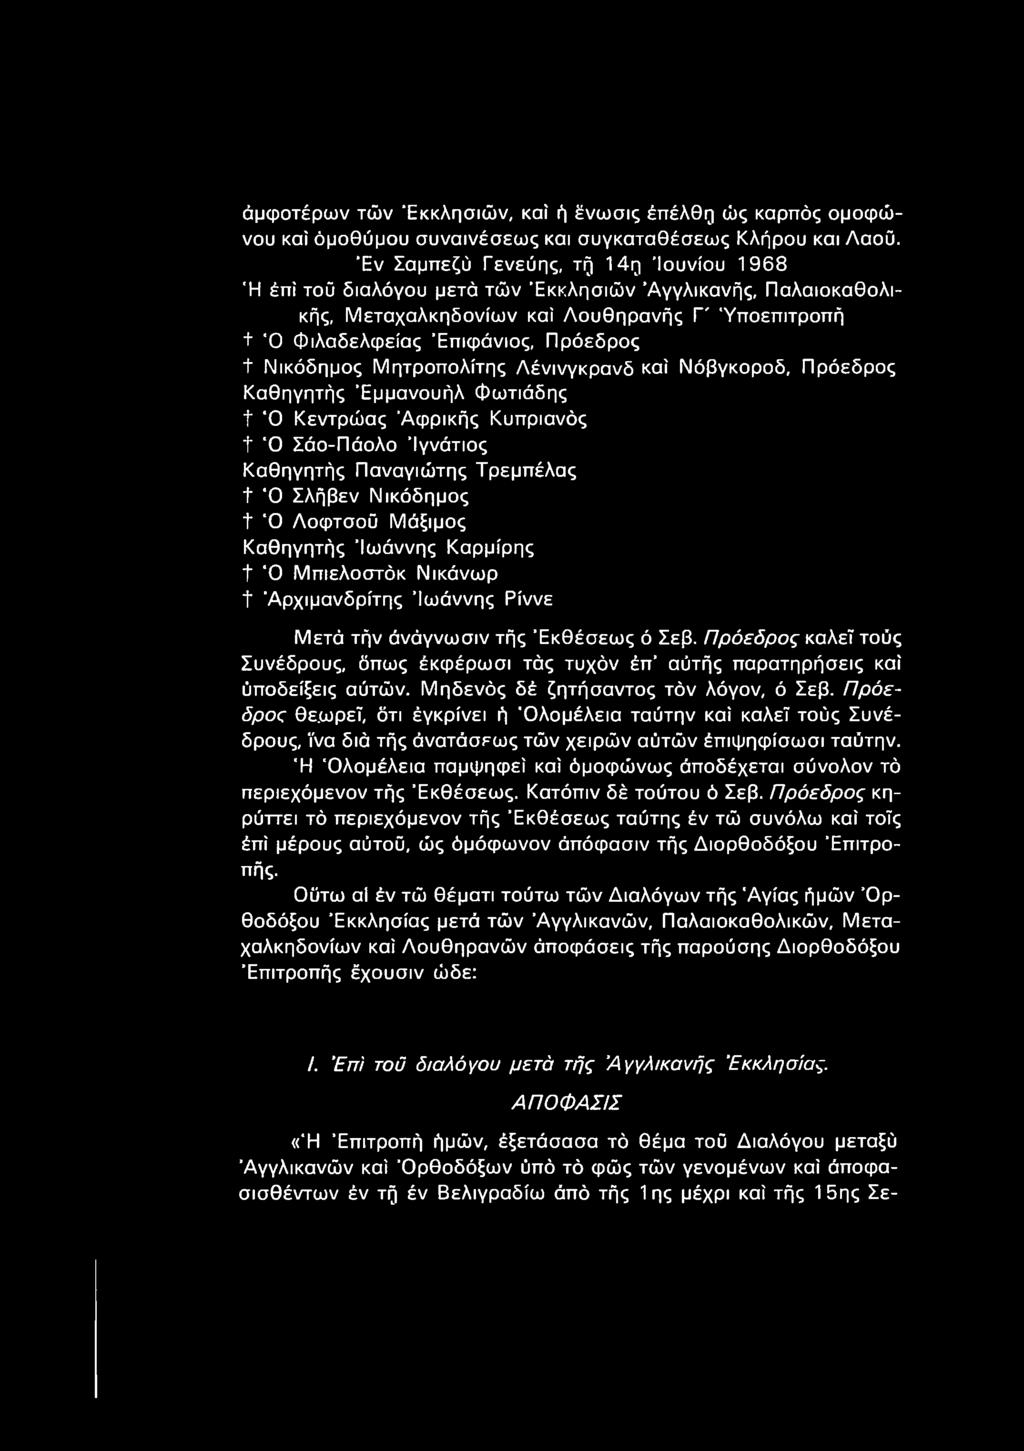 Νικόδημος Μητροπολίτης Λένινγκρανδ καί Νόβγκοροδ, Πρόεδρος Καθηγητής Εμμανουήλ Φωτιάδης t Ό Κεντρώας 'Αφρικής Κυπριανός + Ό Σάο-Πάολο Ιγνάτιος Καθηγητής Παναγιώτης Τρεμπέλας + Ό Σλήβεν Νικόδημος t Ό